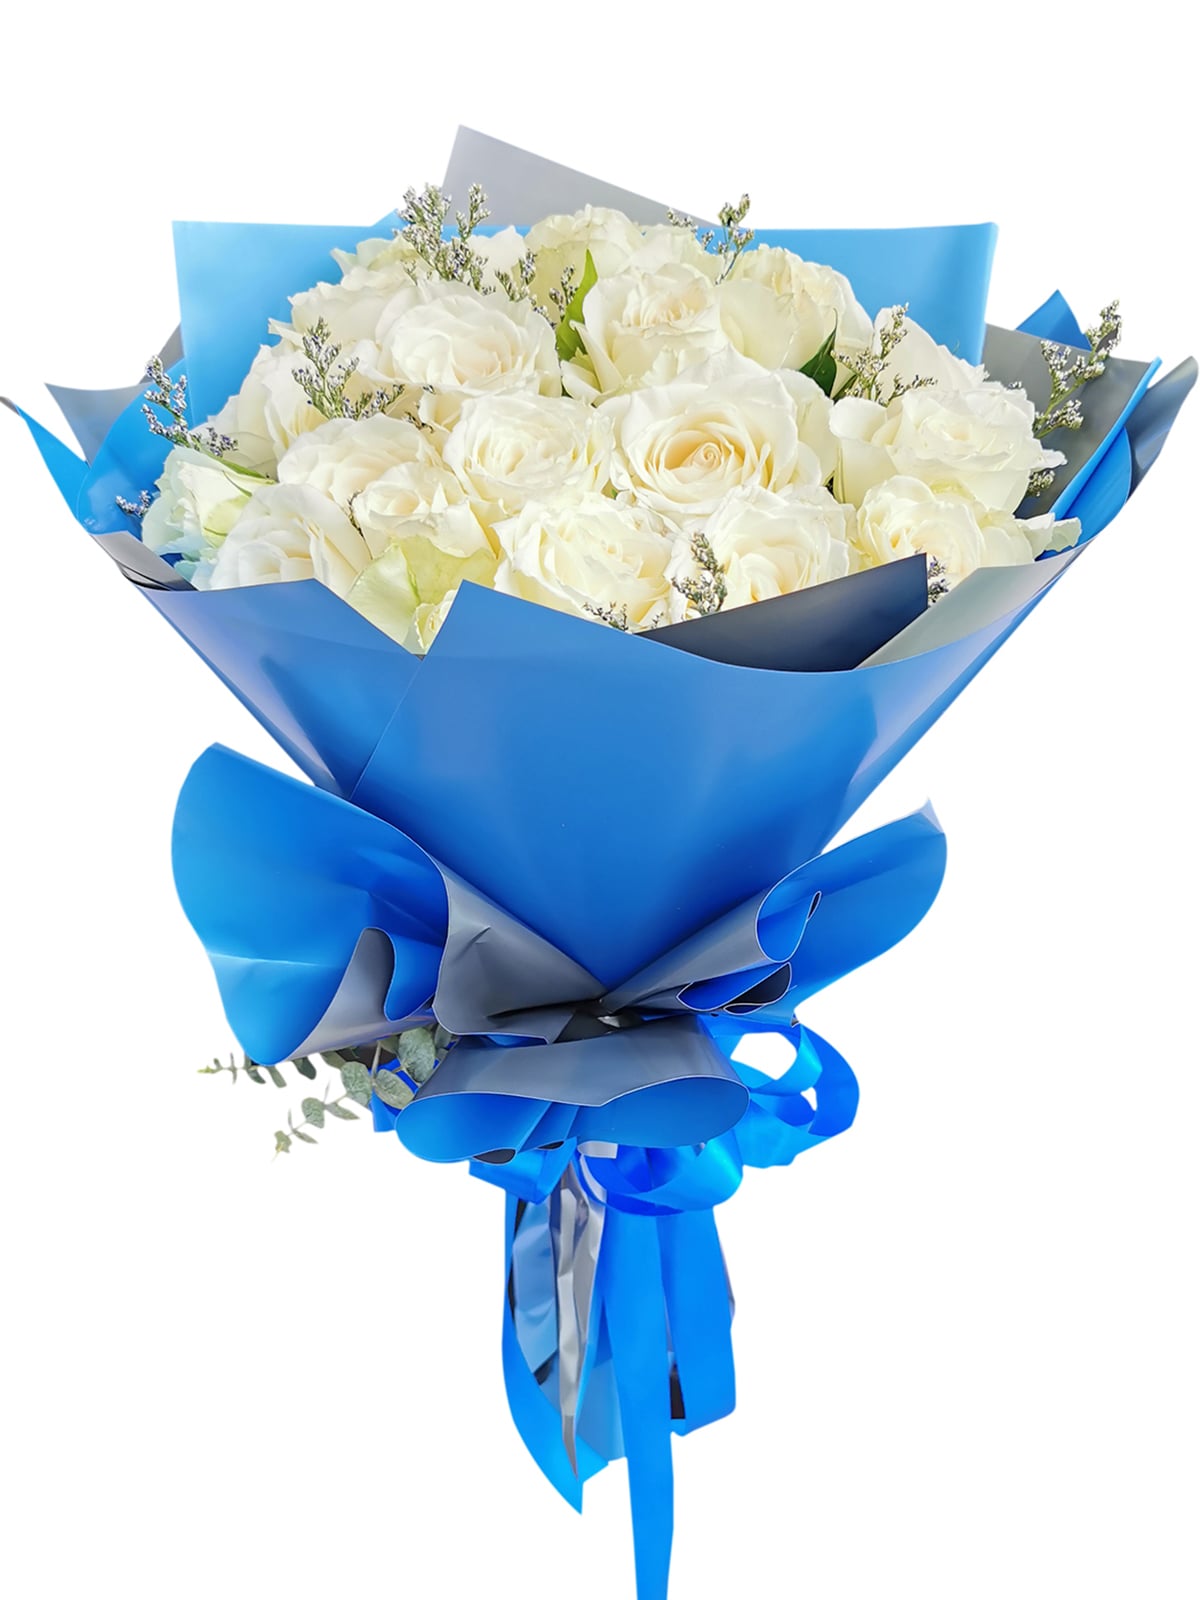 99 pcs white roses, blue